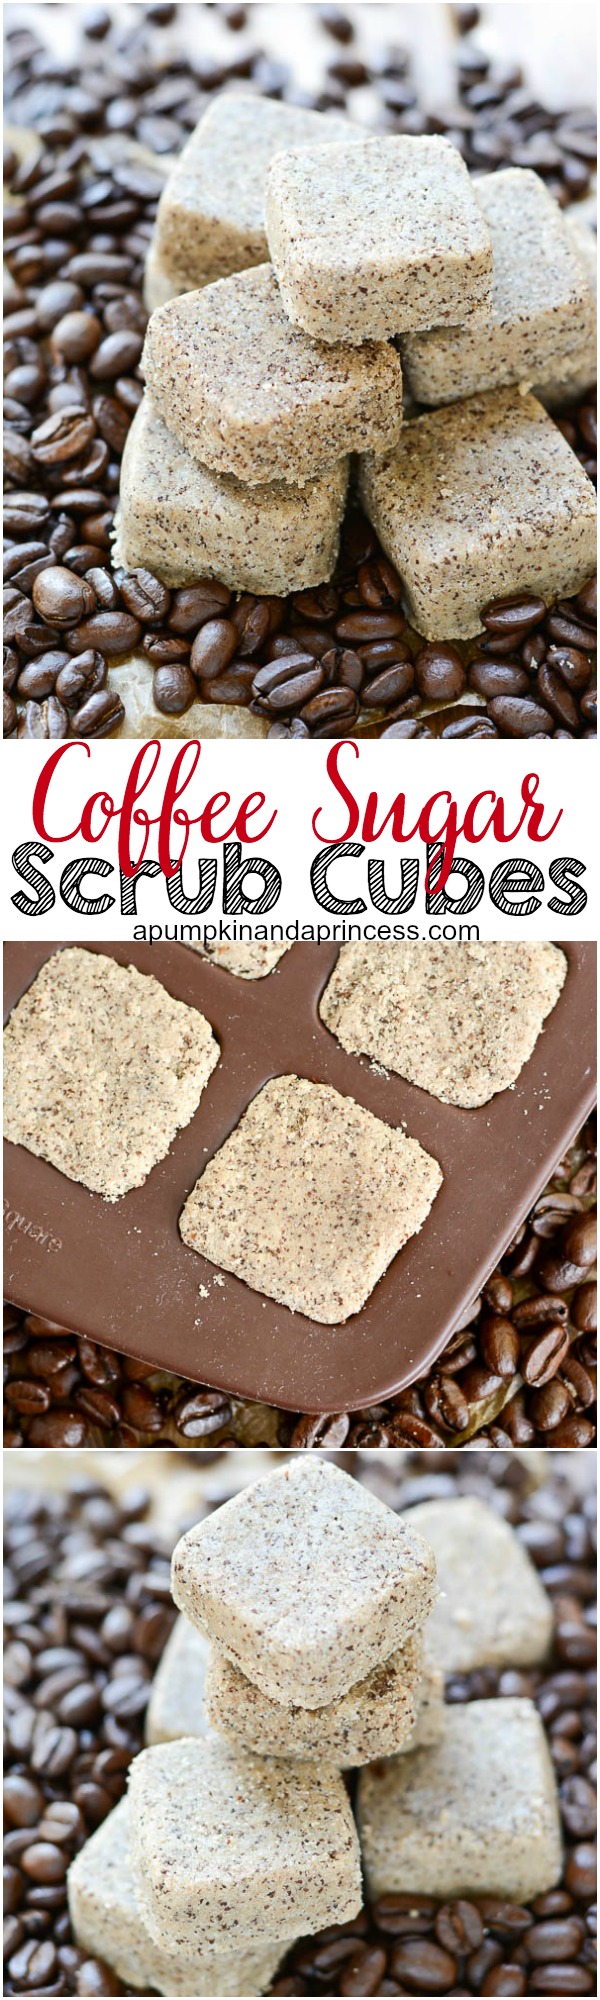 Coffee Sugar Scrub Cubes